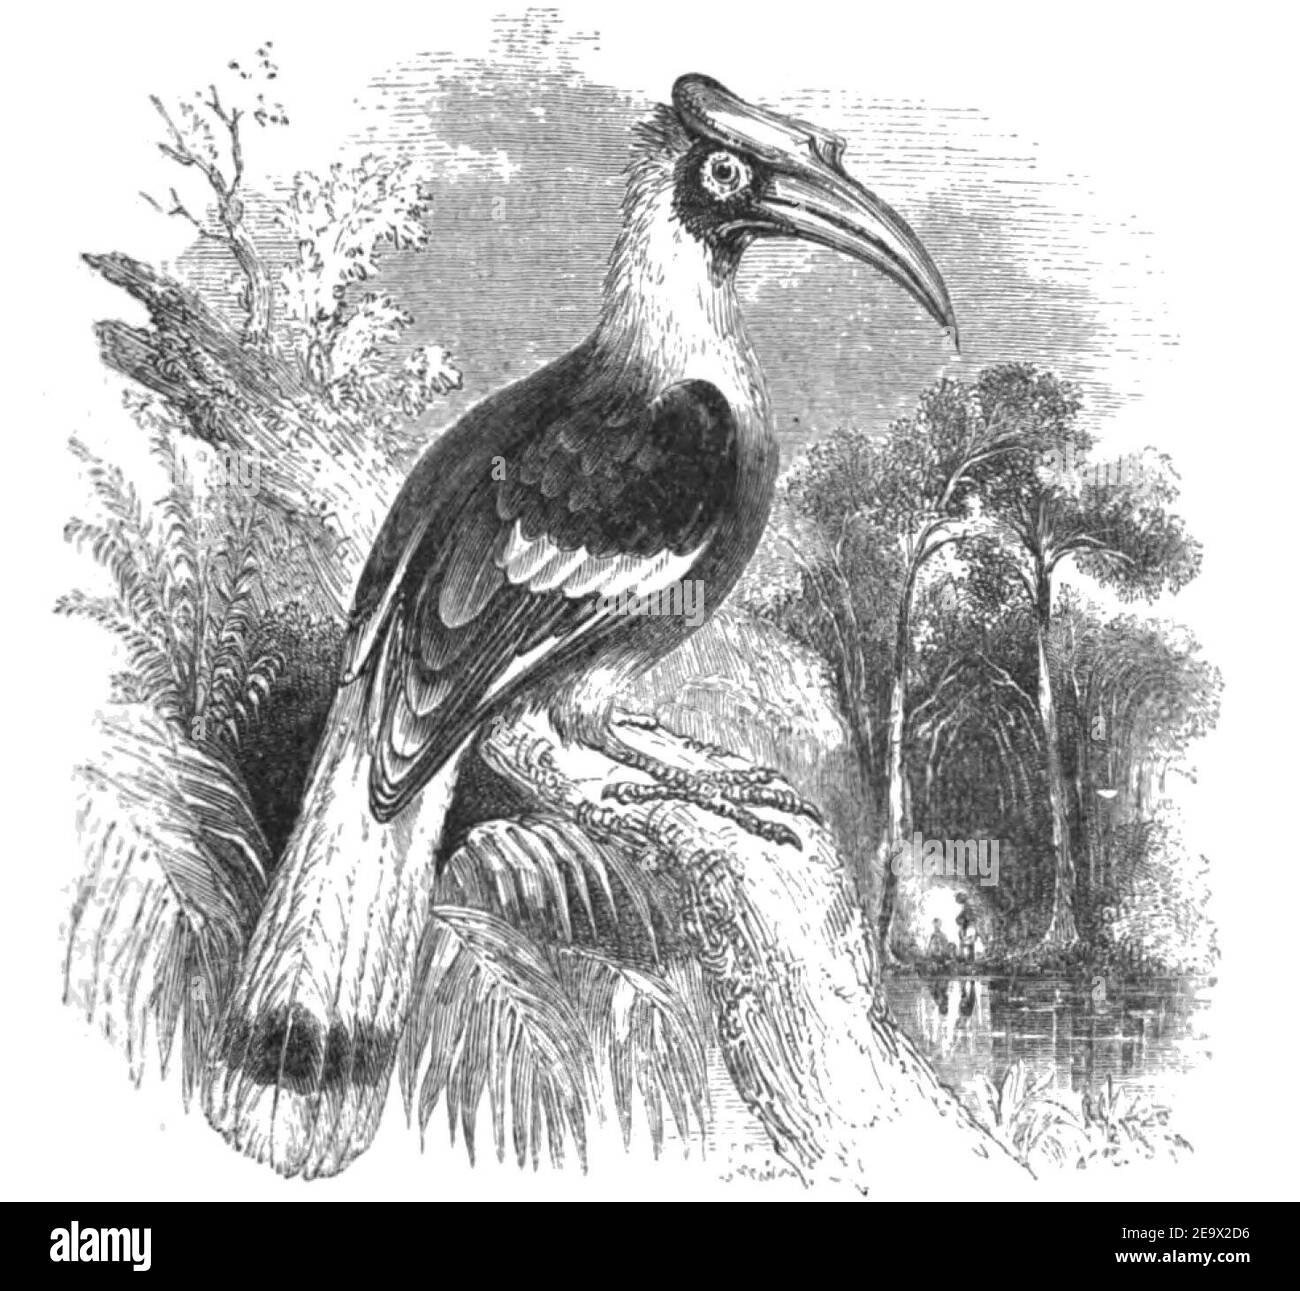 Natural History, Birds - Hornbill. Stock Photo